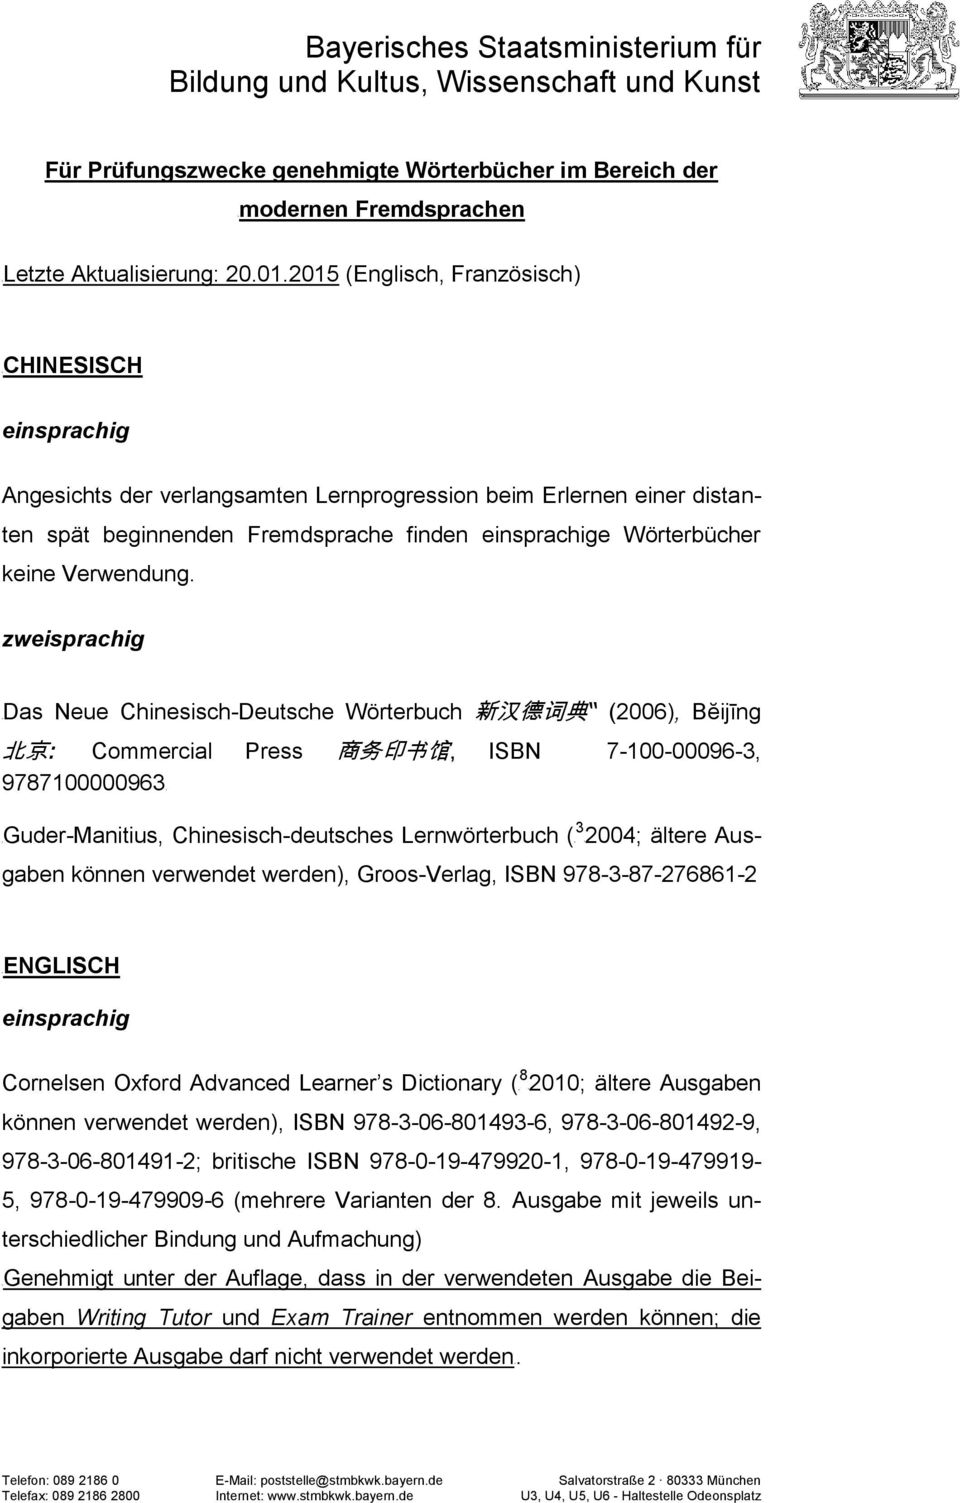 TDas Neue Chinesisch-Deutsche Wörterbuch 新 汉 德 词 典 (2006), Bĕijīng 北 京 : Commercial Press 商 务 印 书 馆, ISBN 7-100-00096-3, 9787100000963 T TGuder-Manitius, Chinesisch-deutsches Lernwörterbuch (P 3